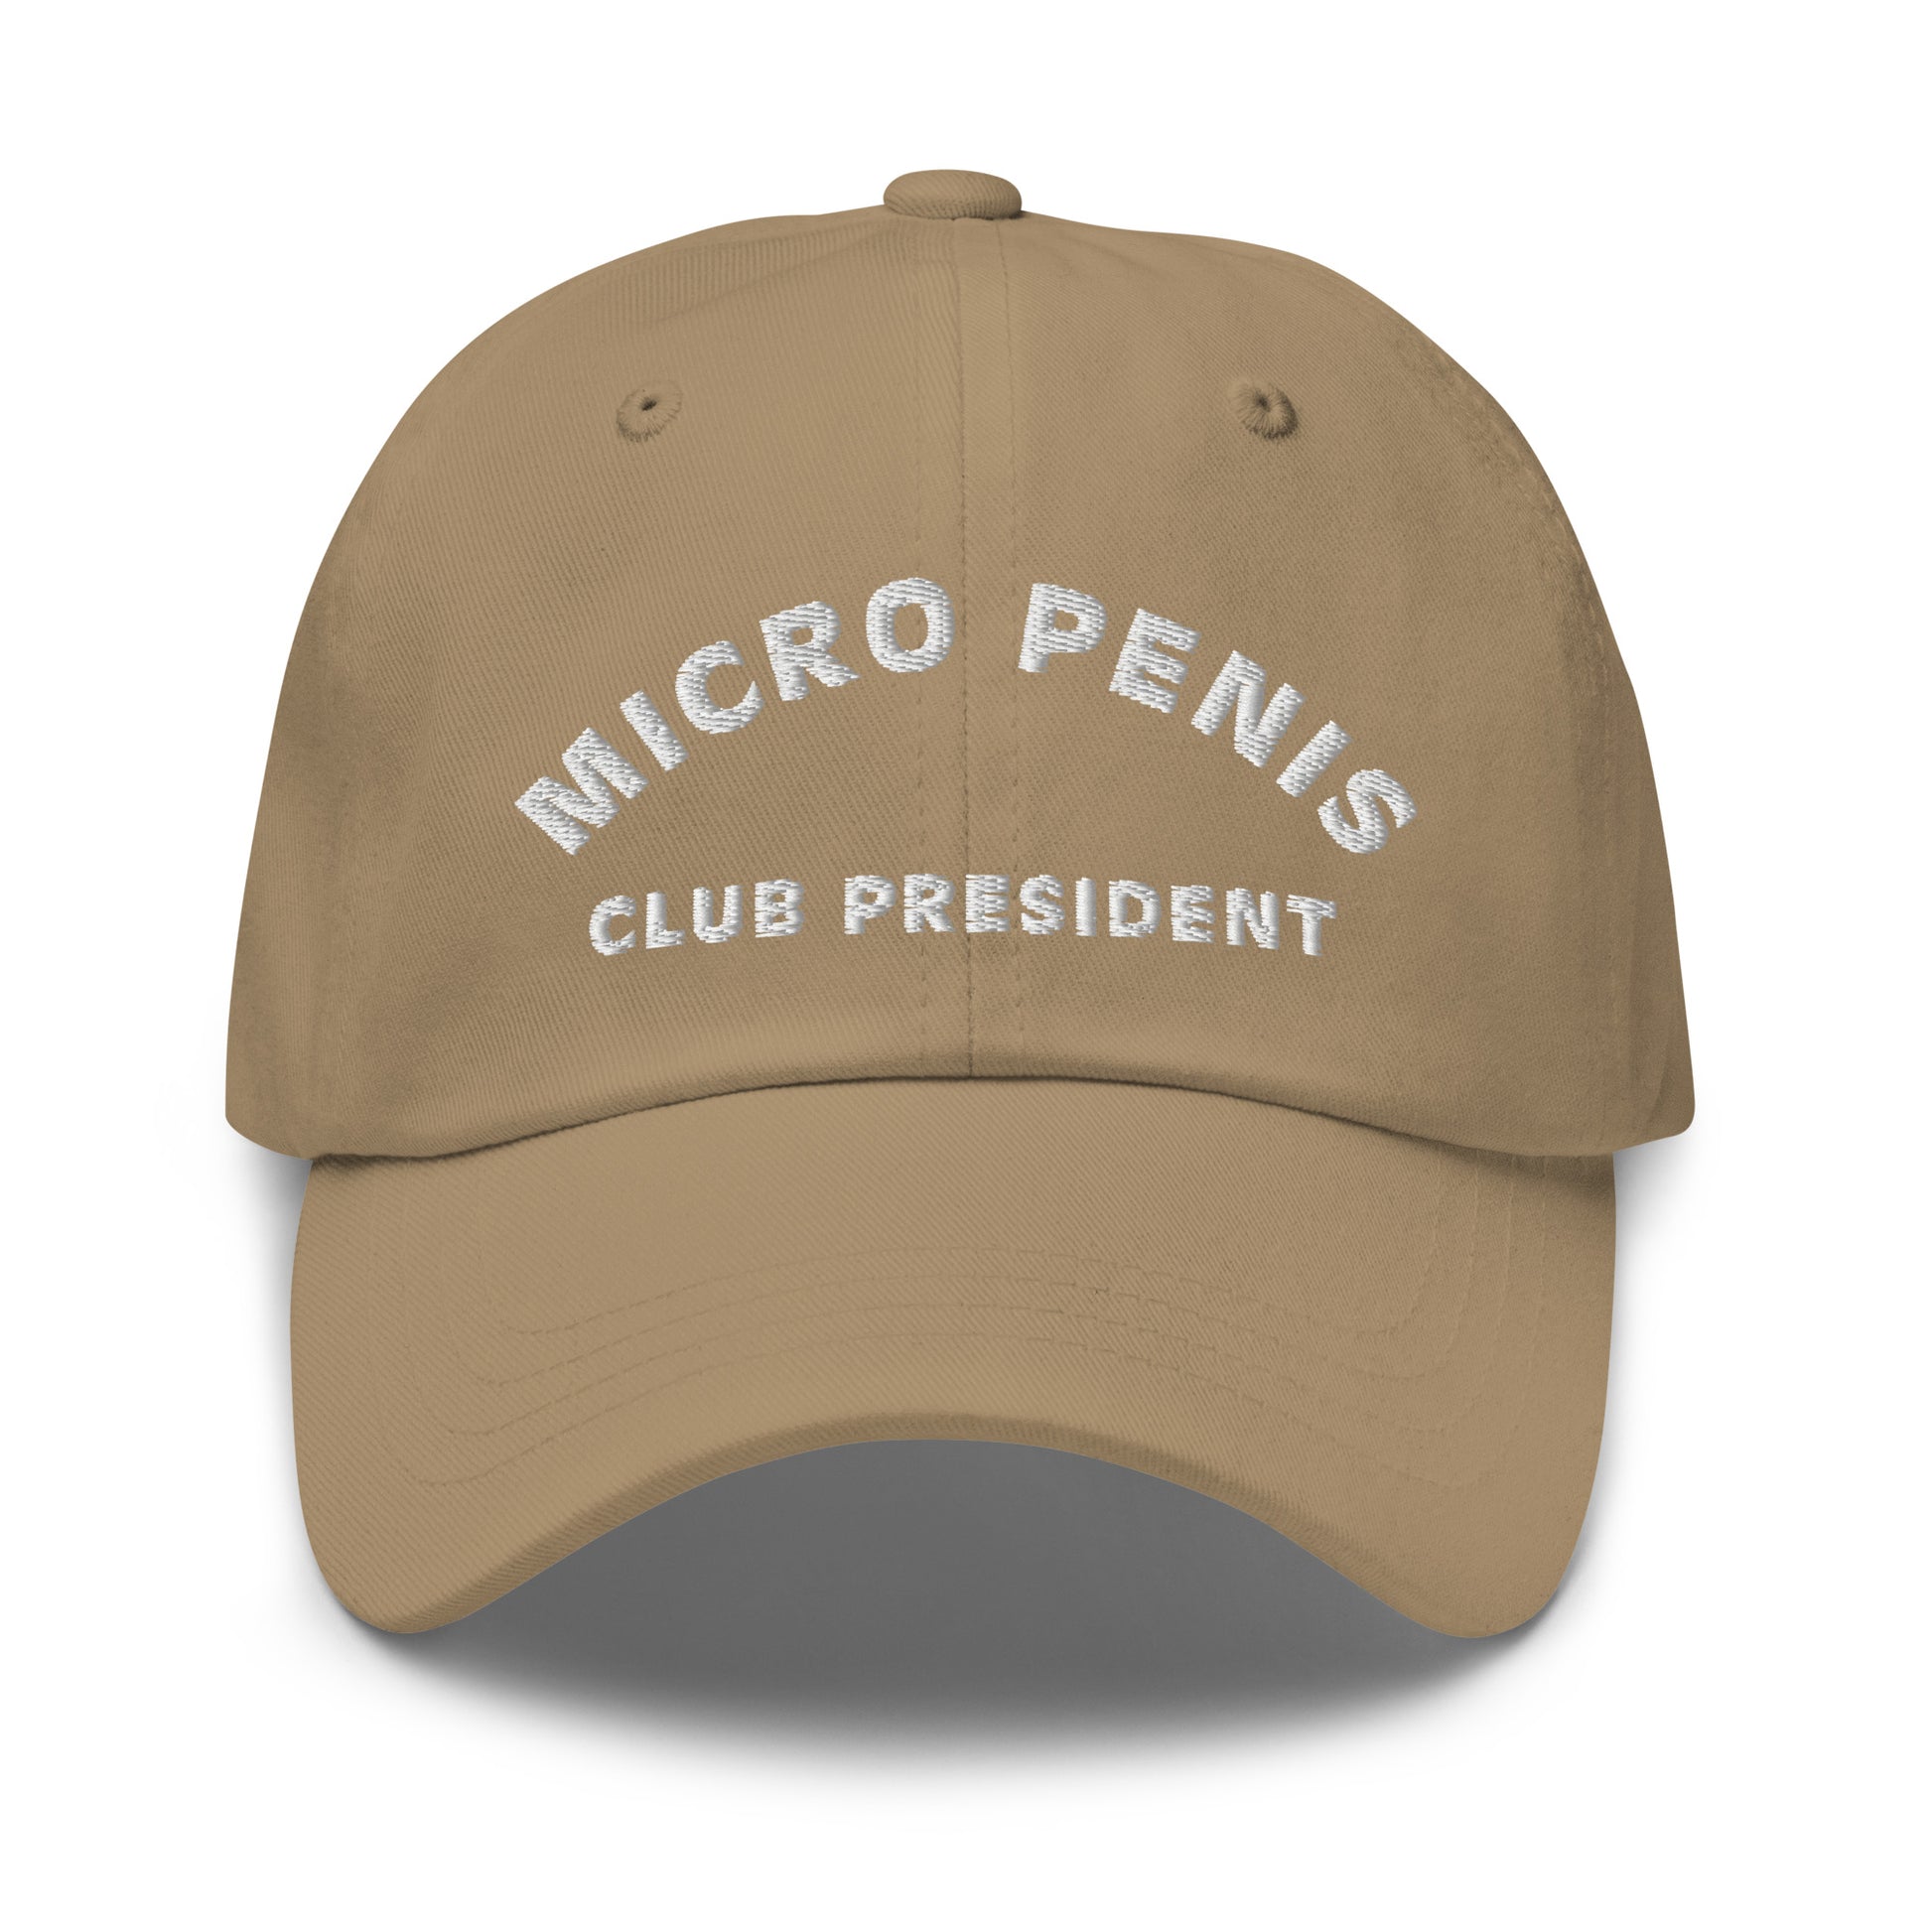 Bild eines Baseball-Caps mit dem Spruch 'MICRO PENIS CLUB PRESIDENT' auf weißem Hintergrund. Ein humorvolles Accessoire für diejenigen mit besonderem Humor. Hergestellt aus Baumwoll-Chino-Cord.